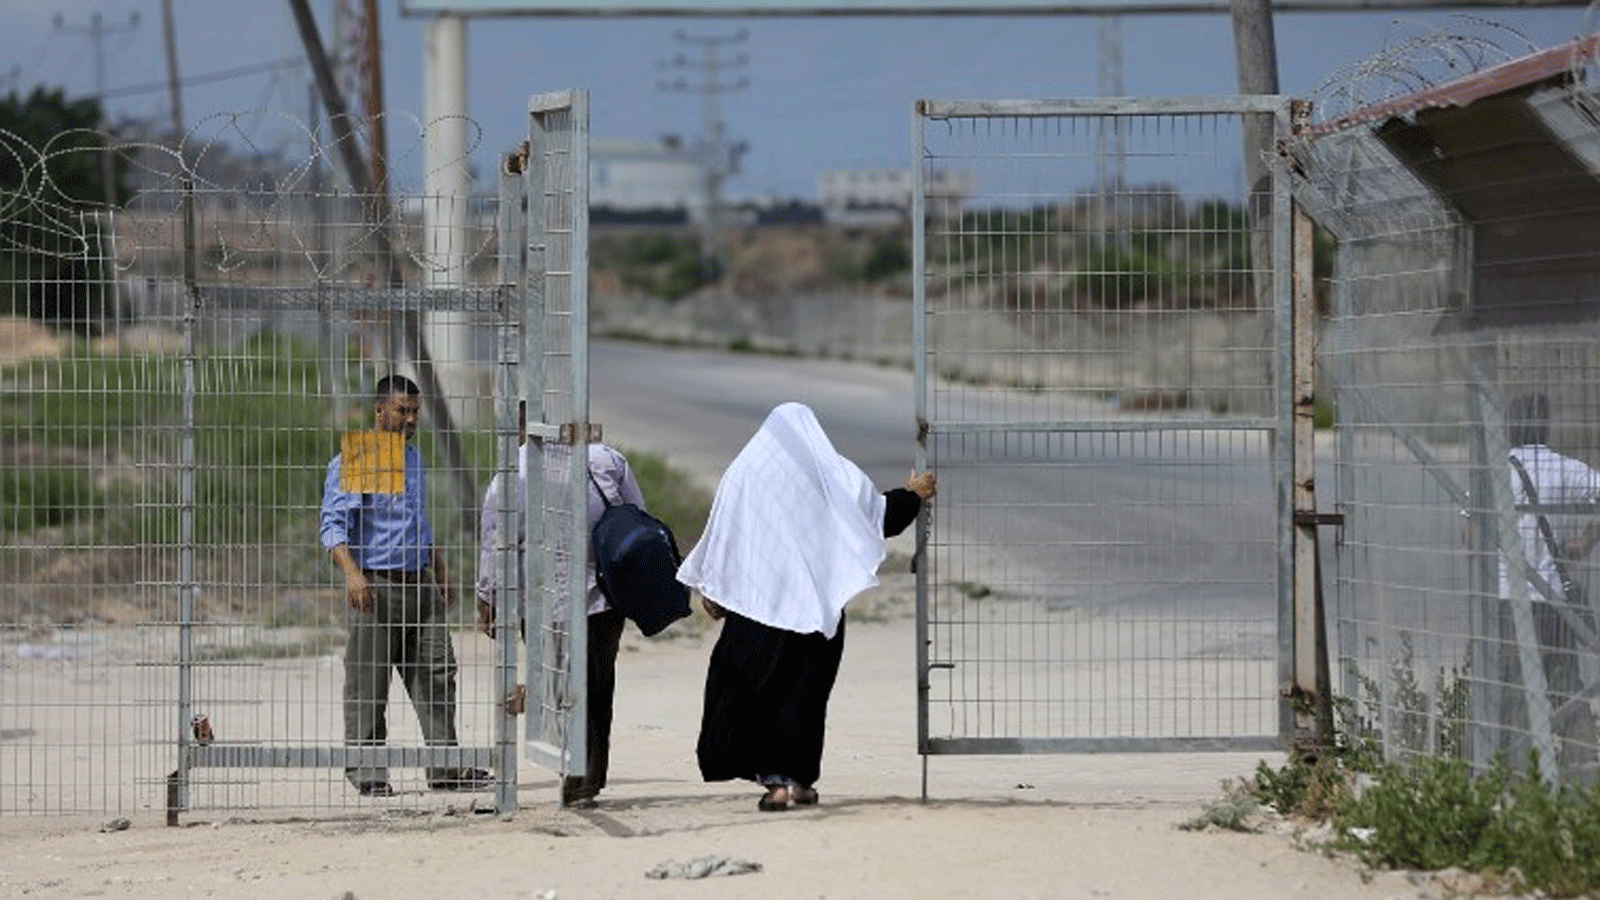 فلسطينيون يعبرون عند معبر إيريز مع إسرائيل بالقرب من بيت حانون في شمال قطاع غزة، 27 آب\ أغسطس 2018.